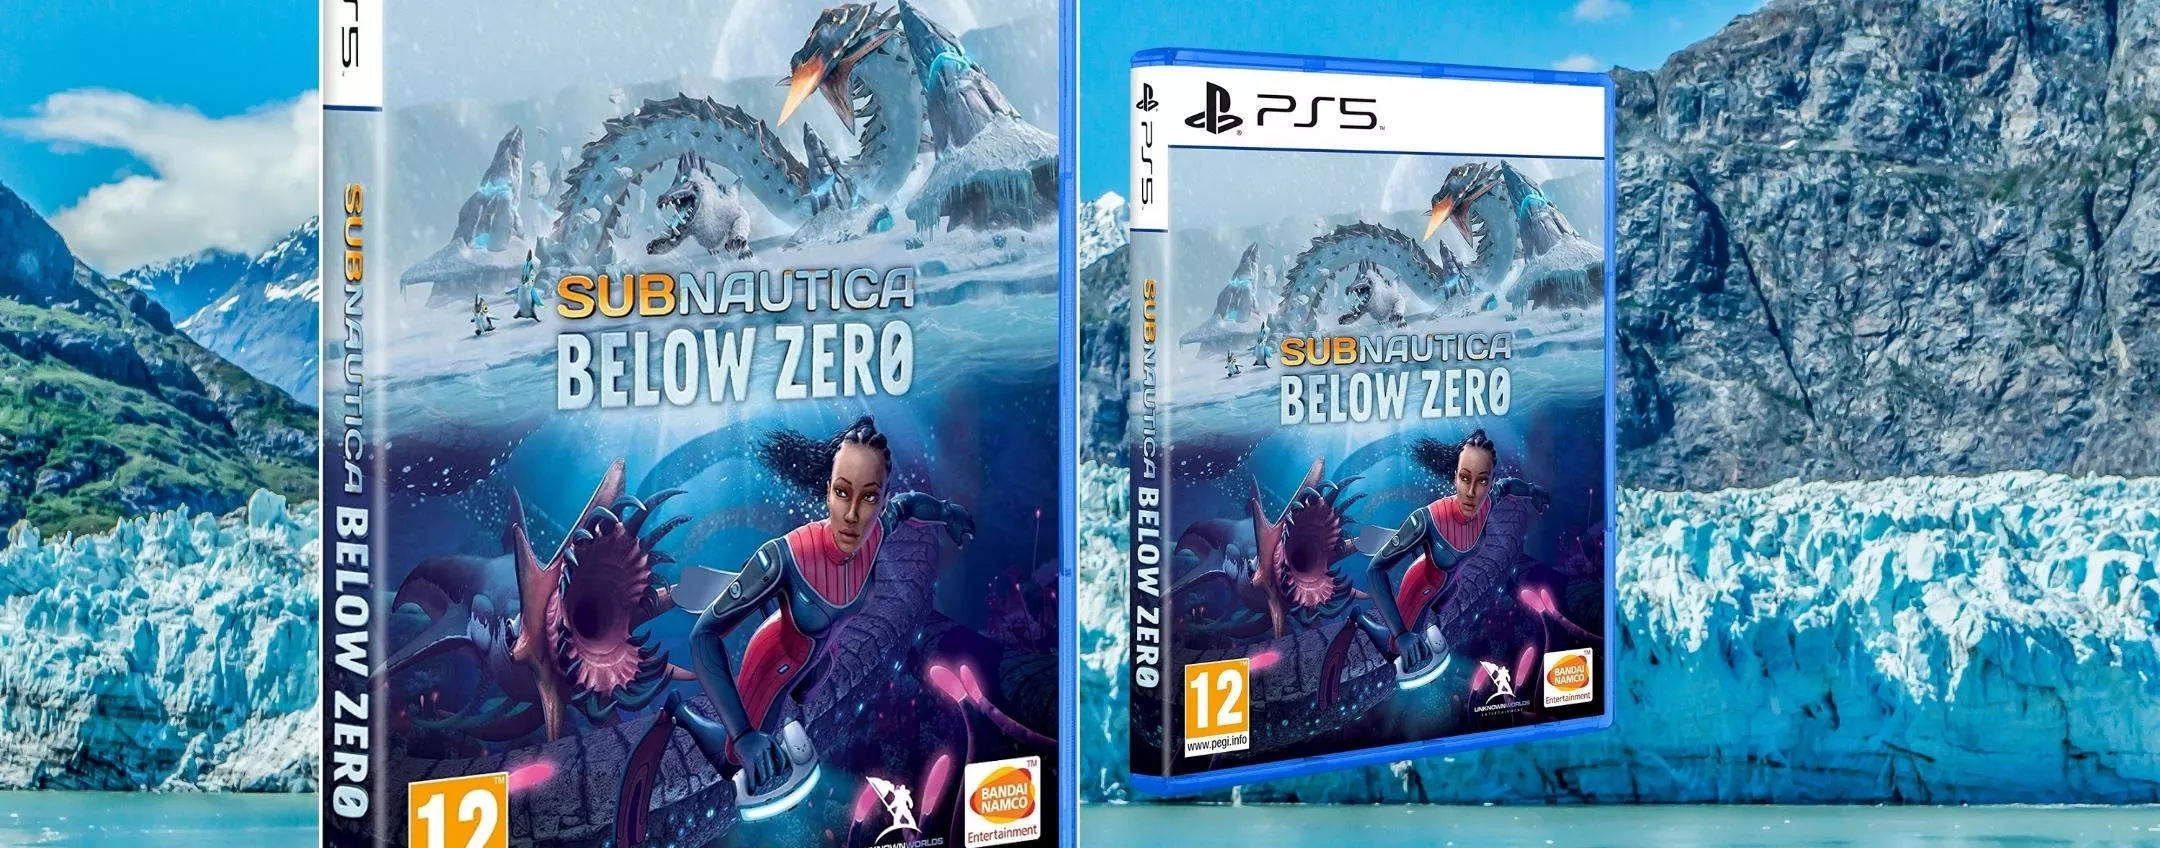 Subnautica Below Zero, acquistalo per PlayStation 5 a piccolo prezzo